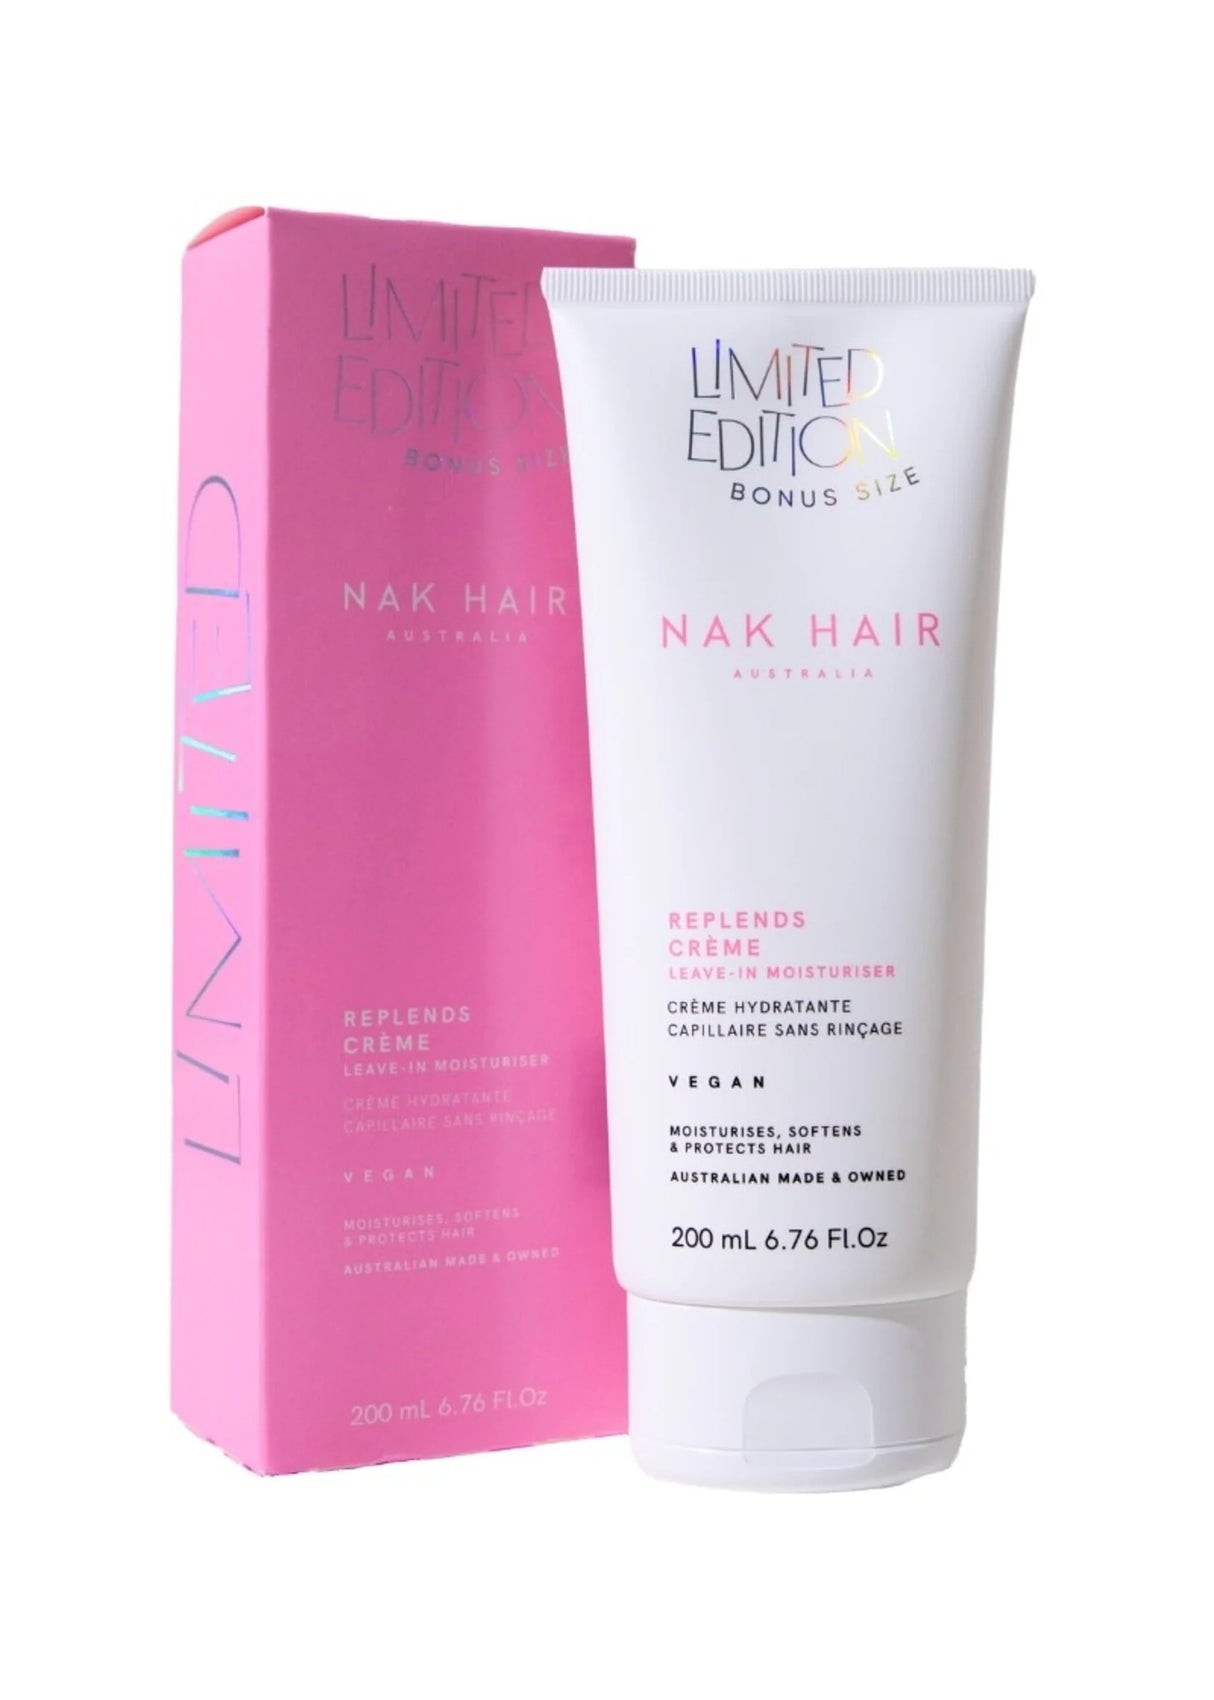 Nak Hair Replends Creme Leave in Moisturiser 200ml Bonus Size